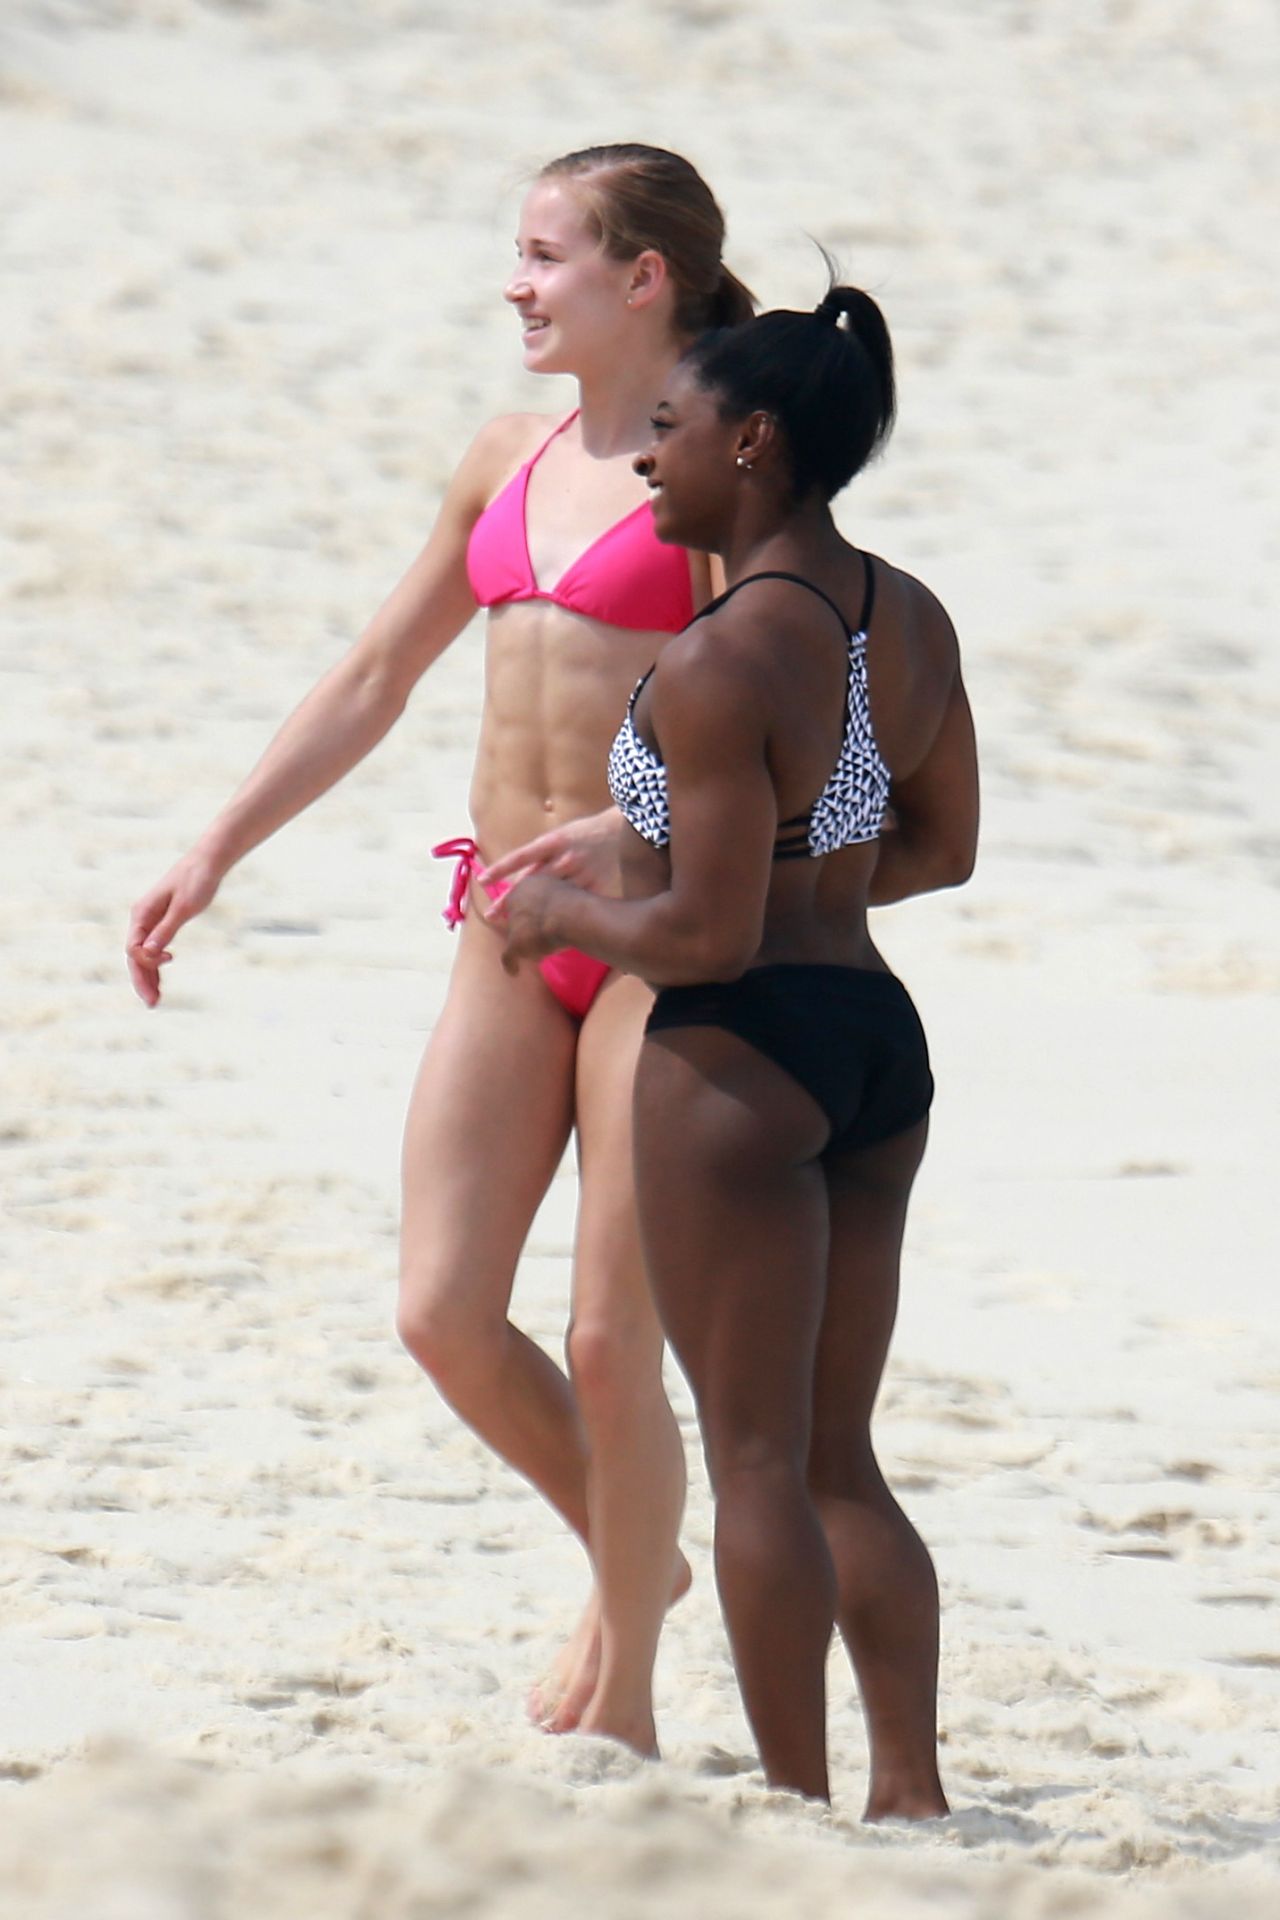 Aly Raisman Simone Biles Madison Kocian In Bikinis At A Beach In Rio De Janeiro